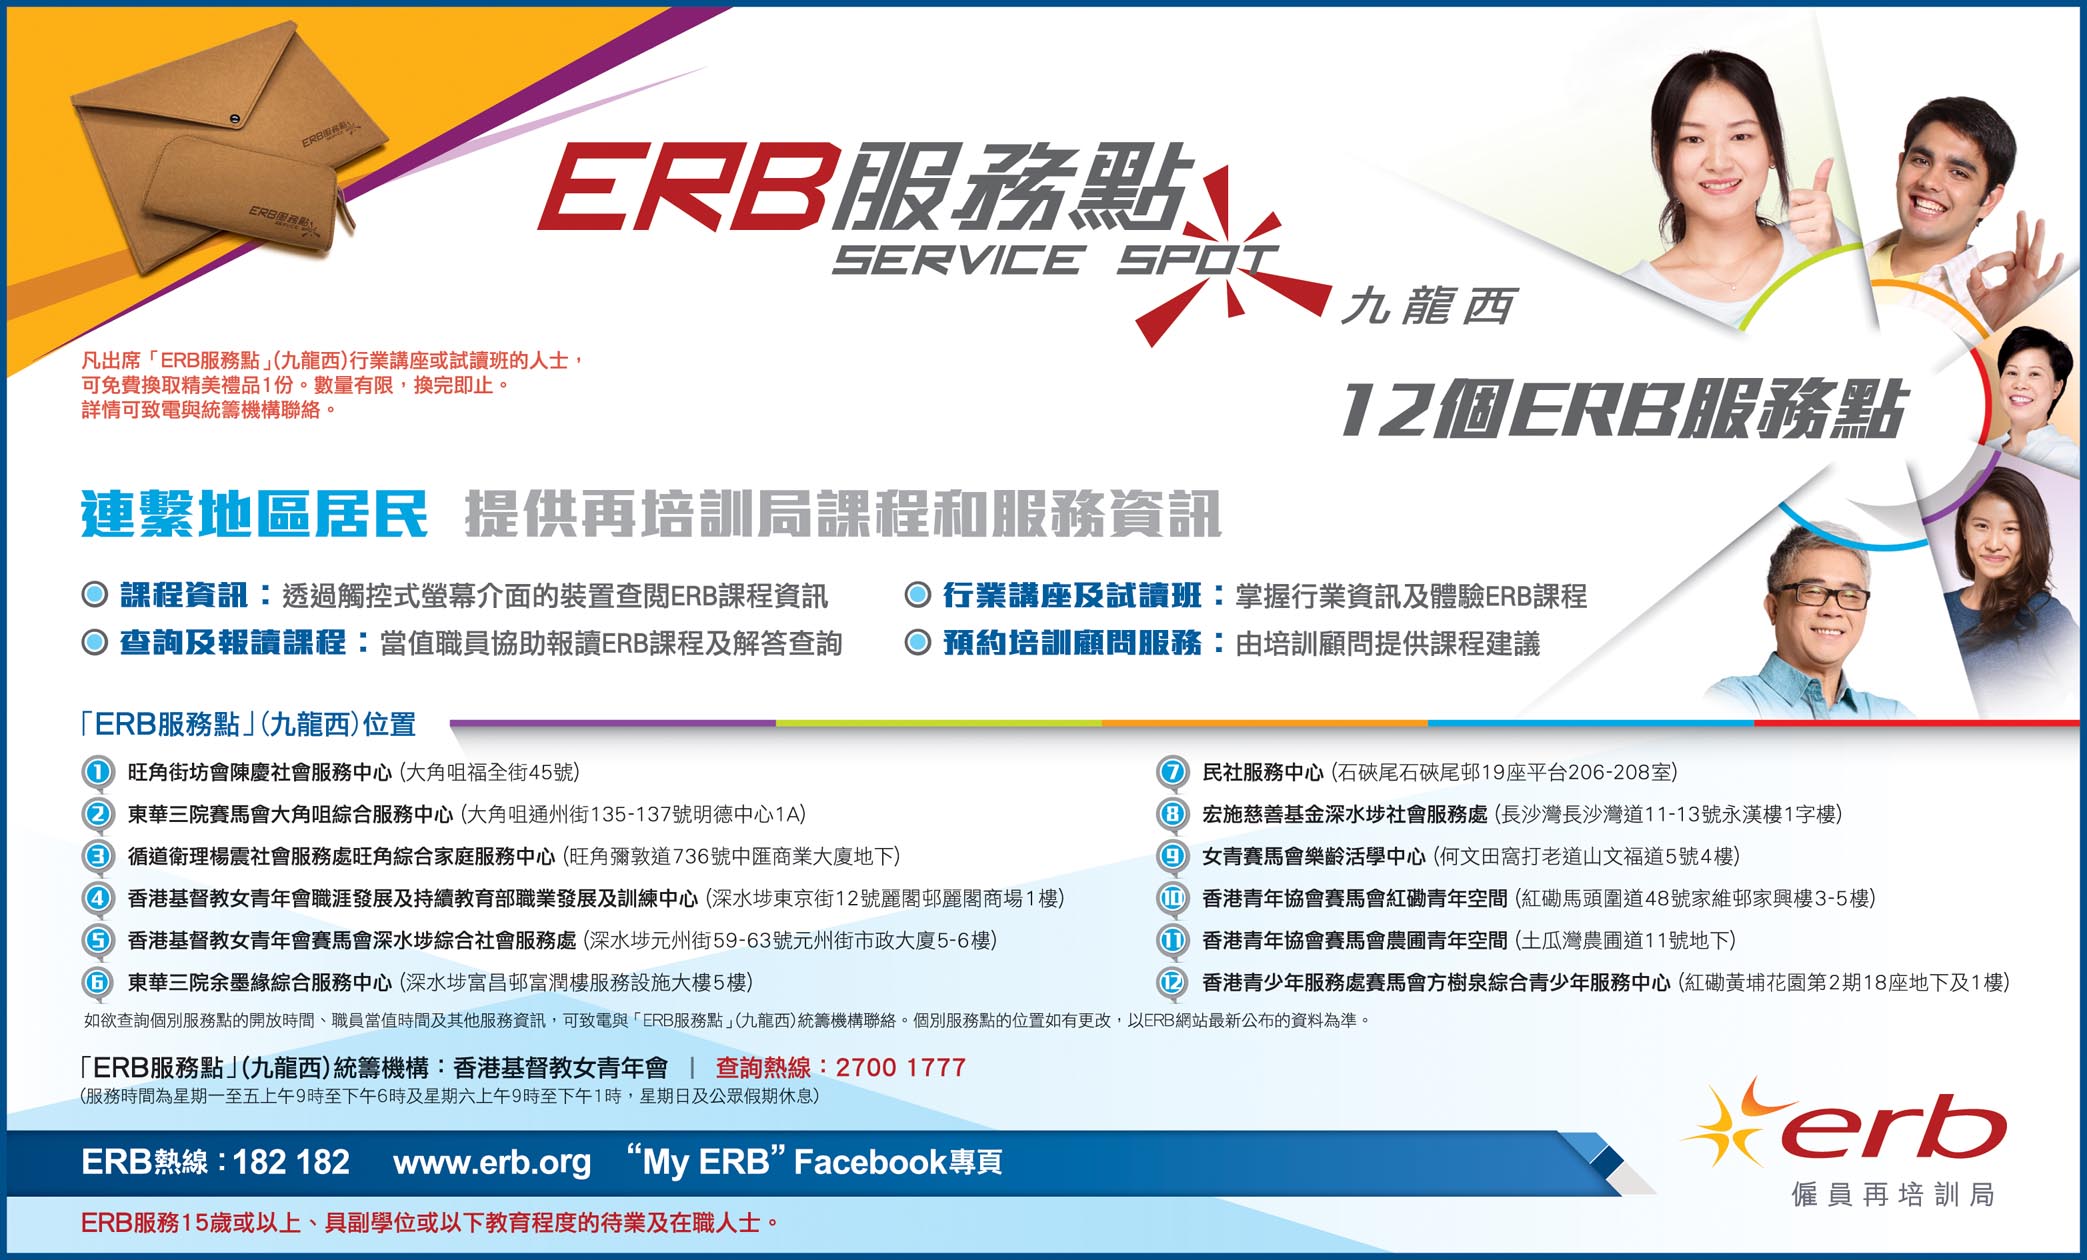 按此下載ERB服務點九龍西報章廣告圖像版